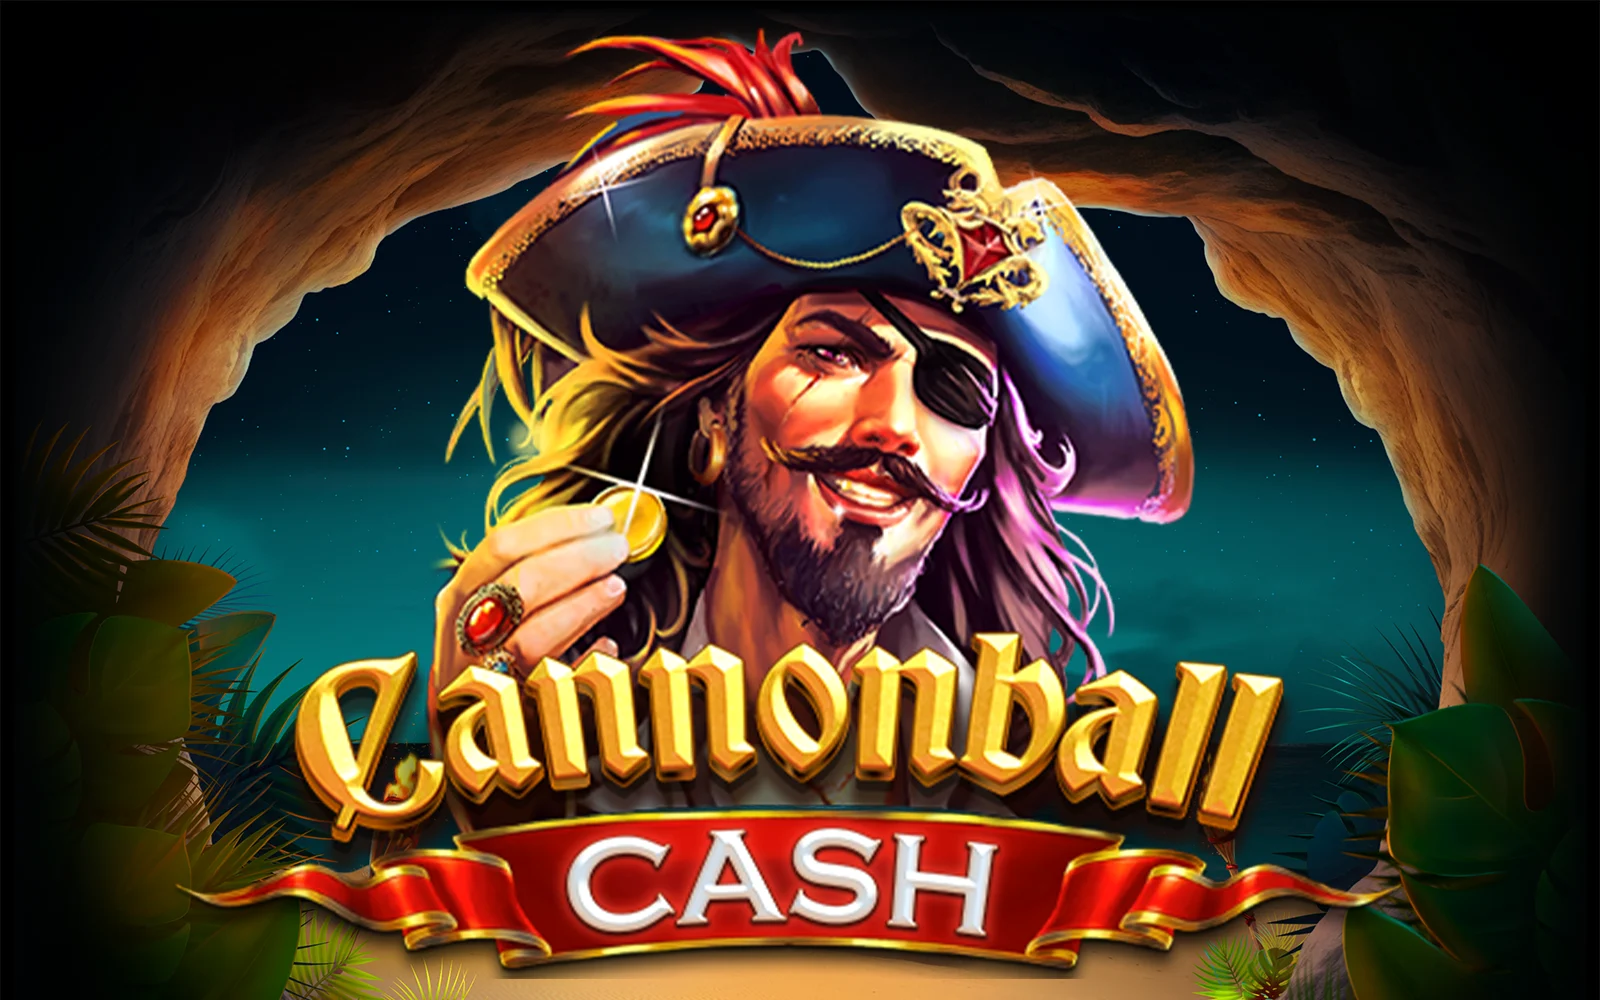 Joacă Cannonball Cash în cazinoul online Starcasino.be